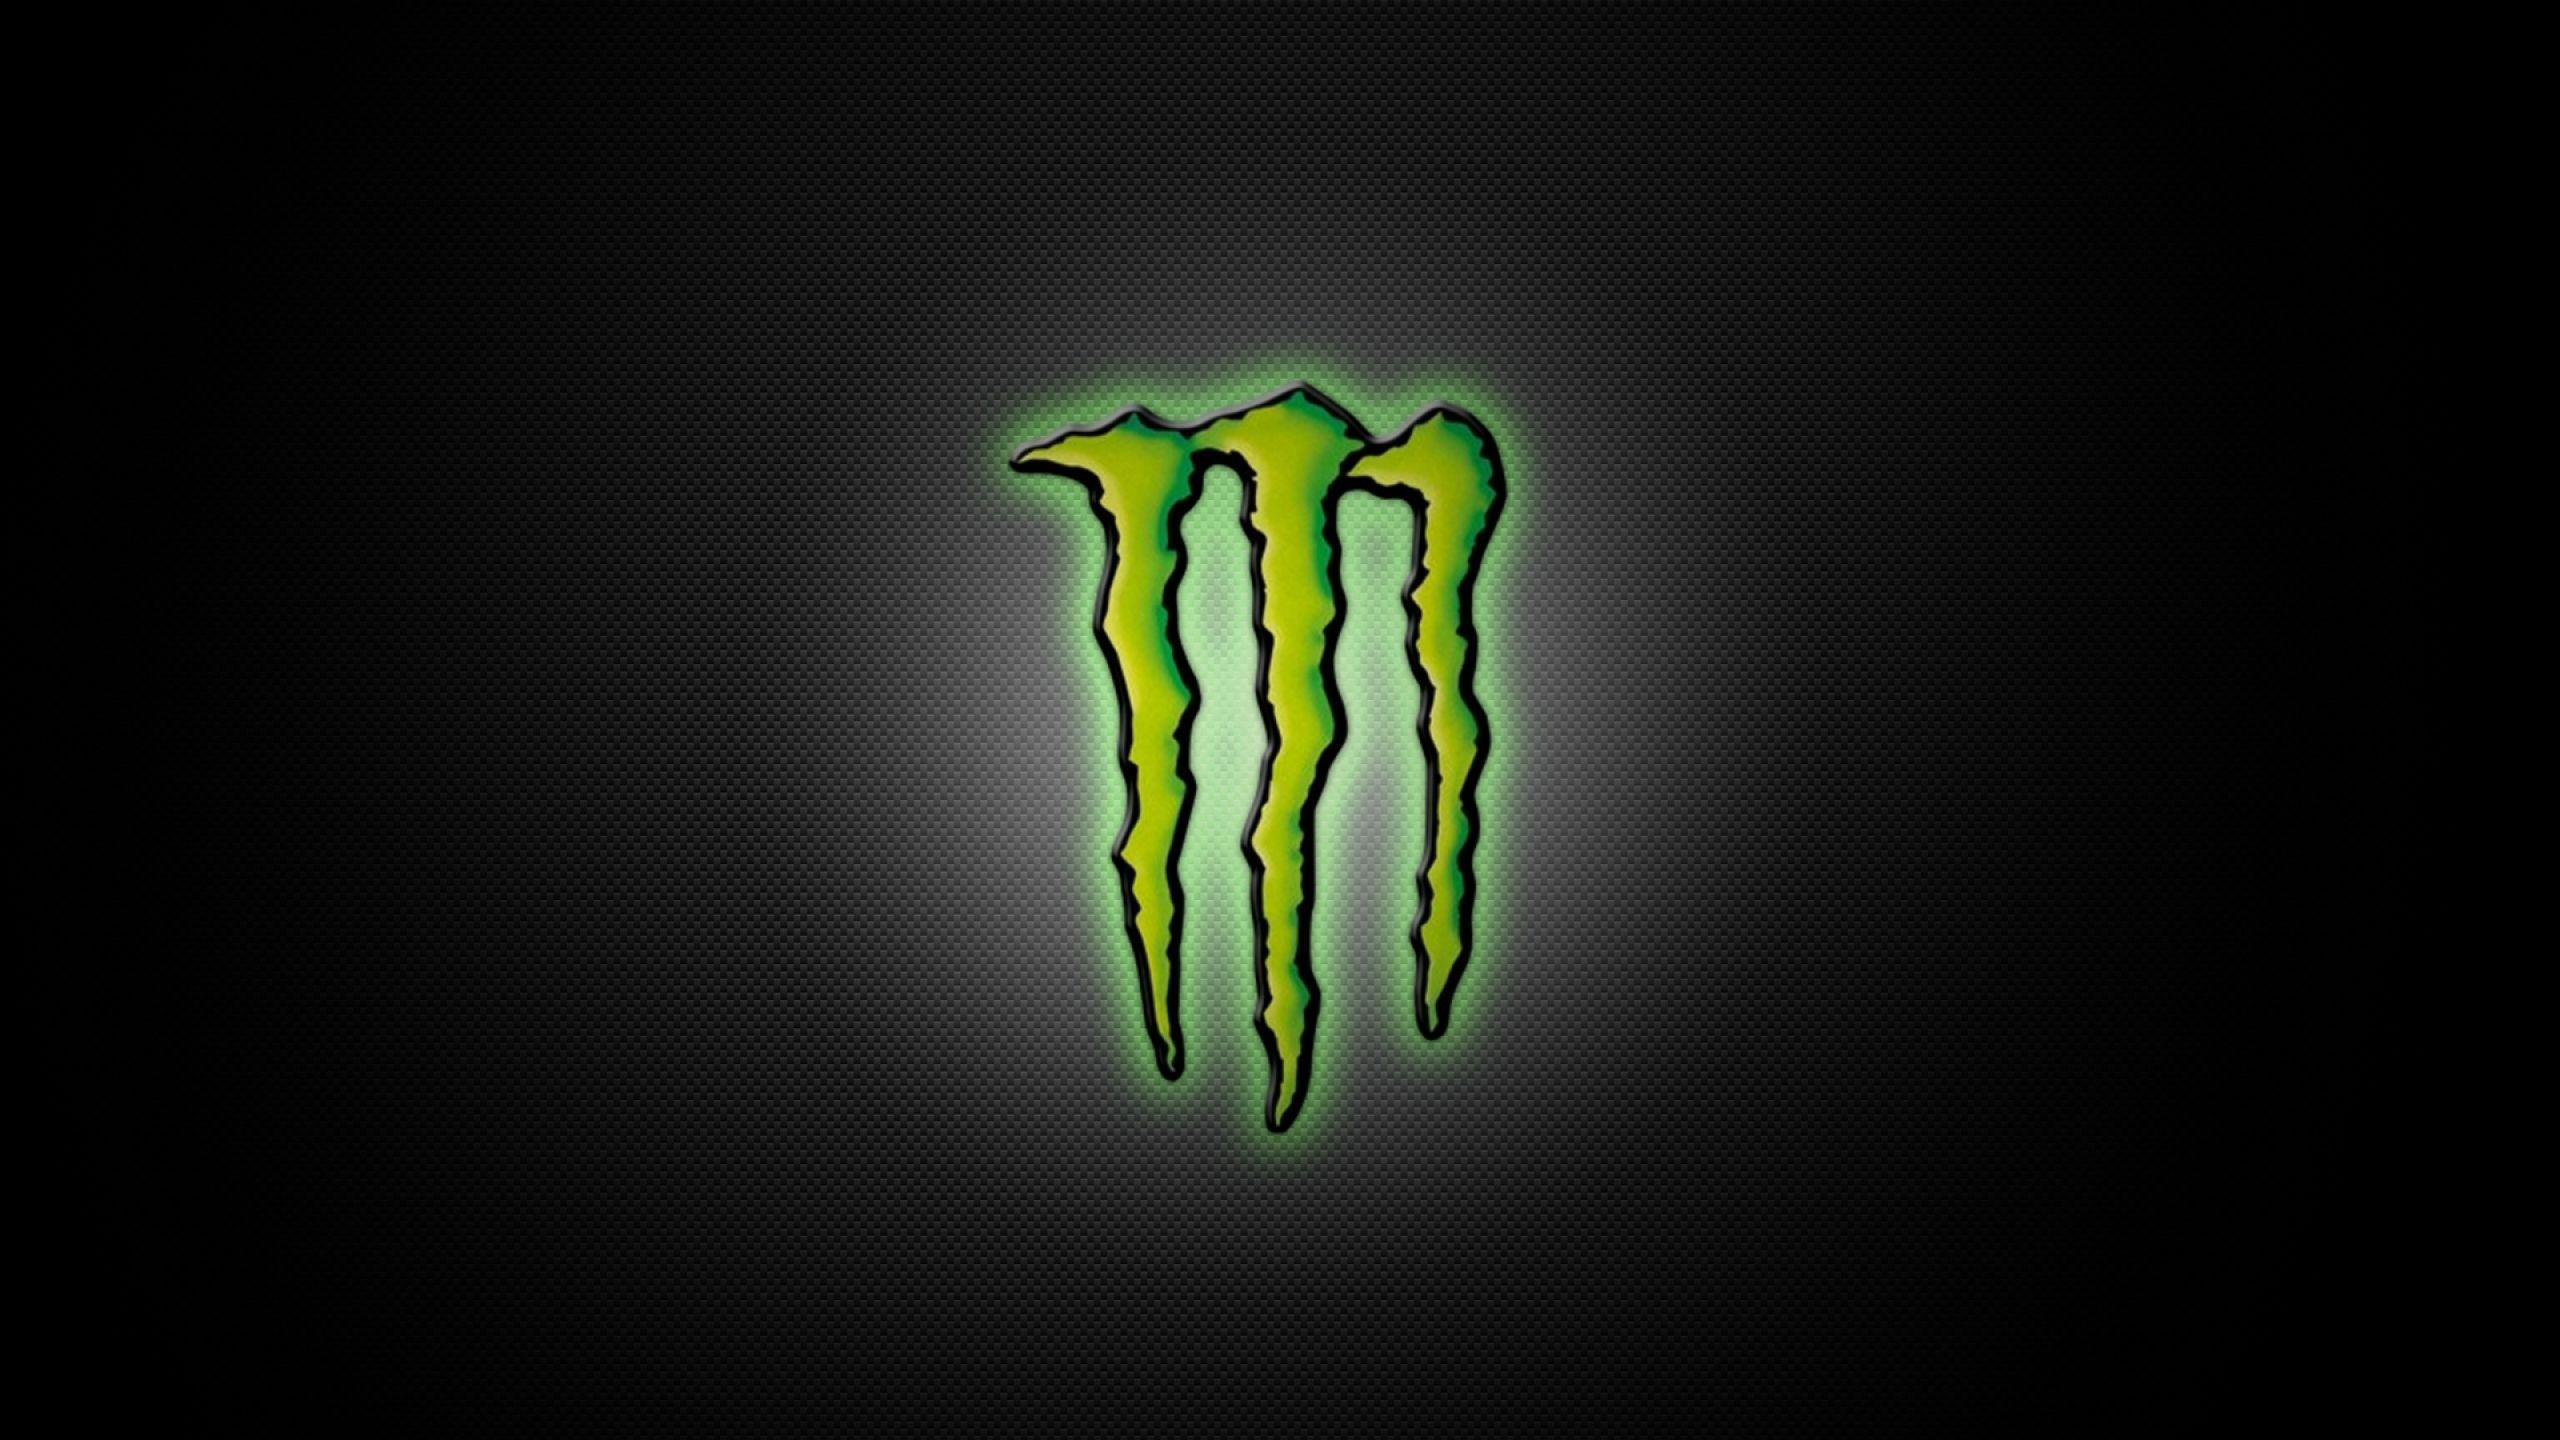 Cool Monster Logo - Monster Energy Wallpaper, Picture, Image